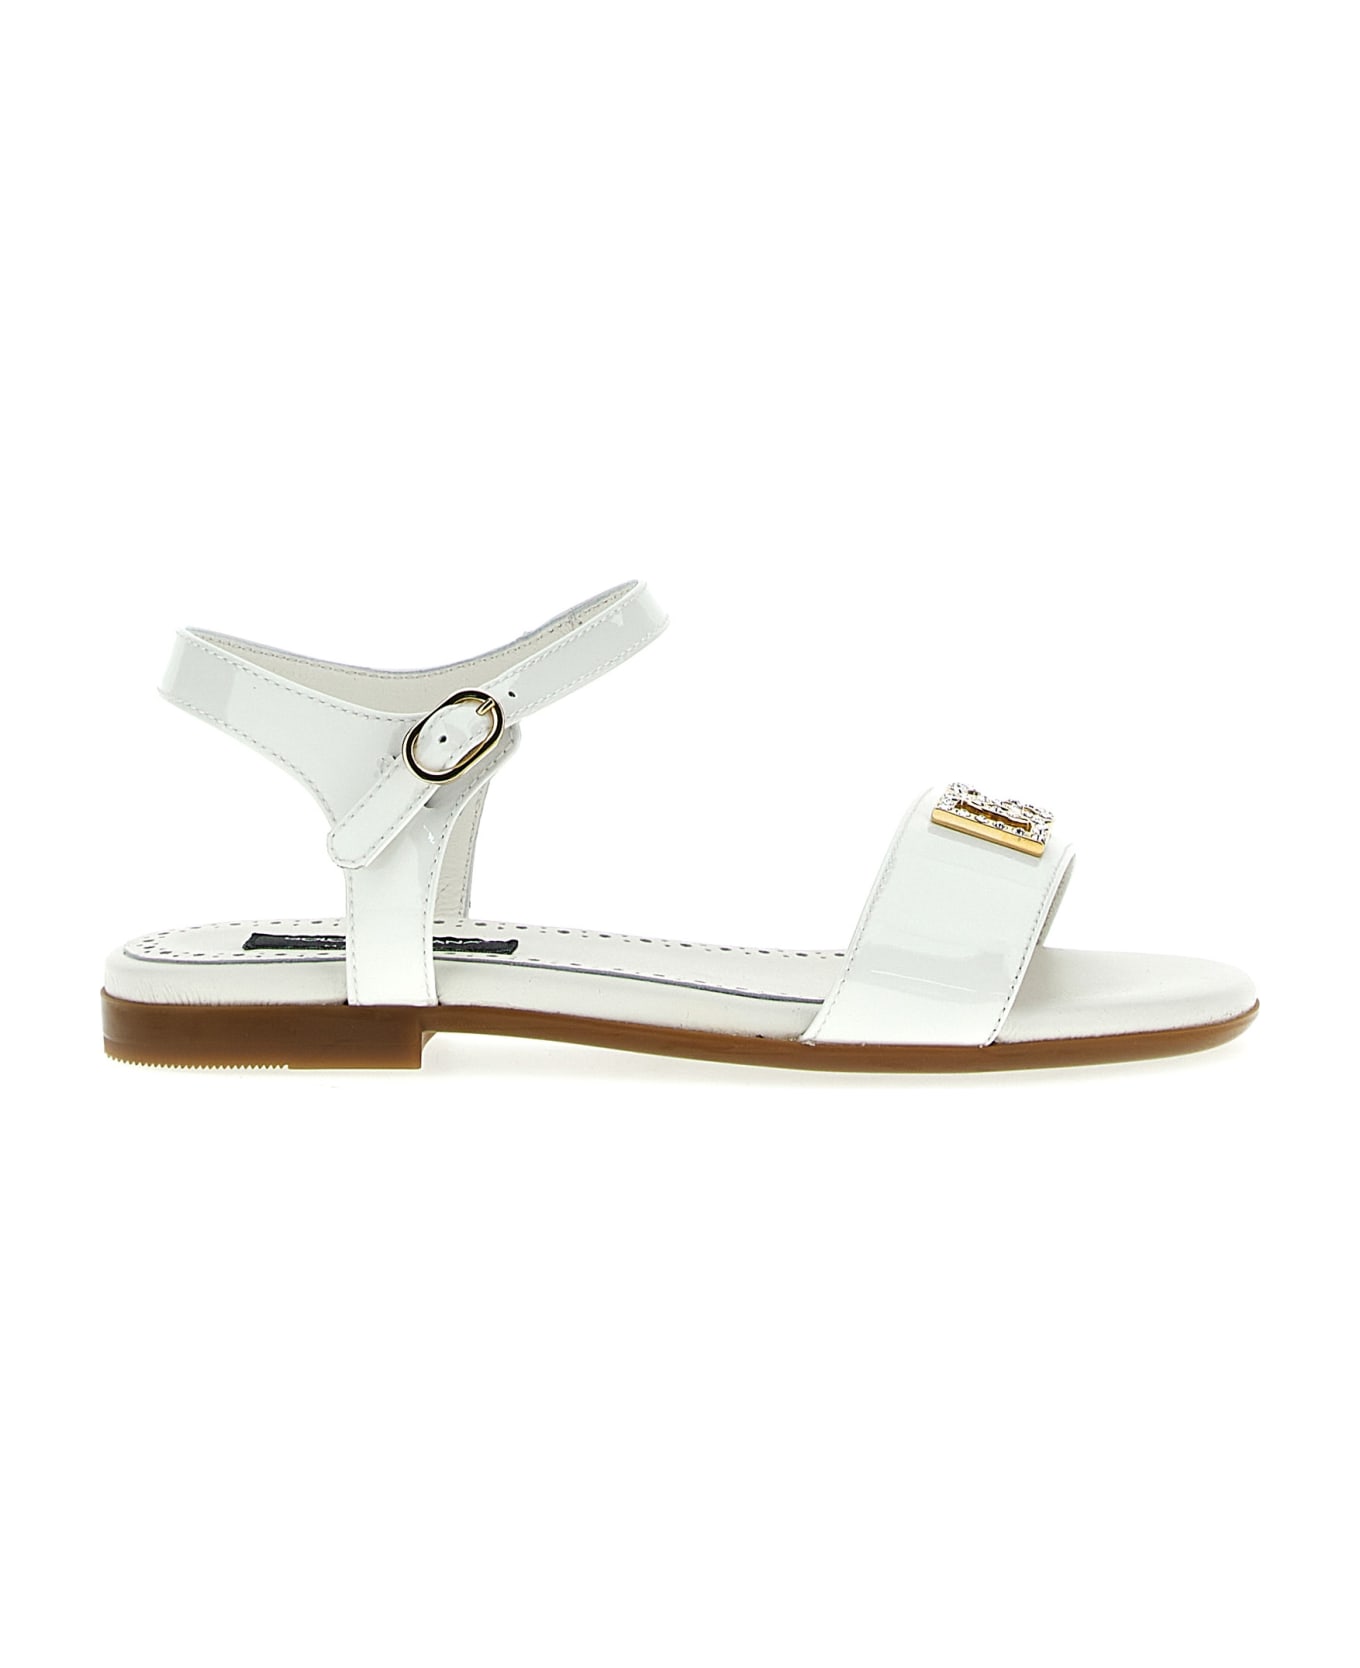 Dolce & Gabbana Logo Patent Sandals - White シューズ